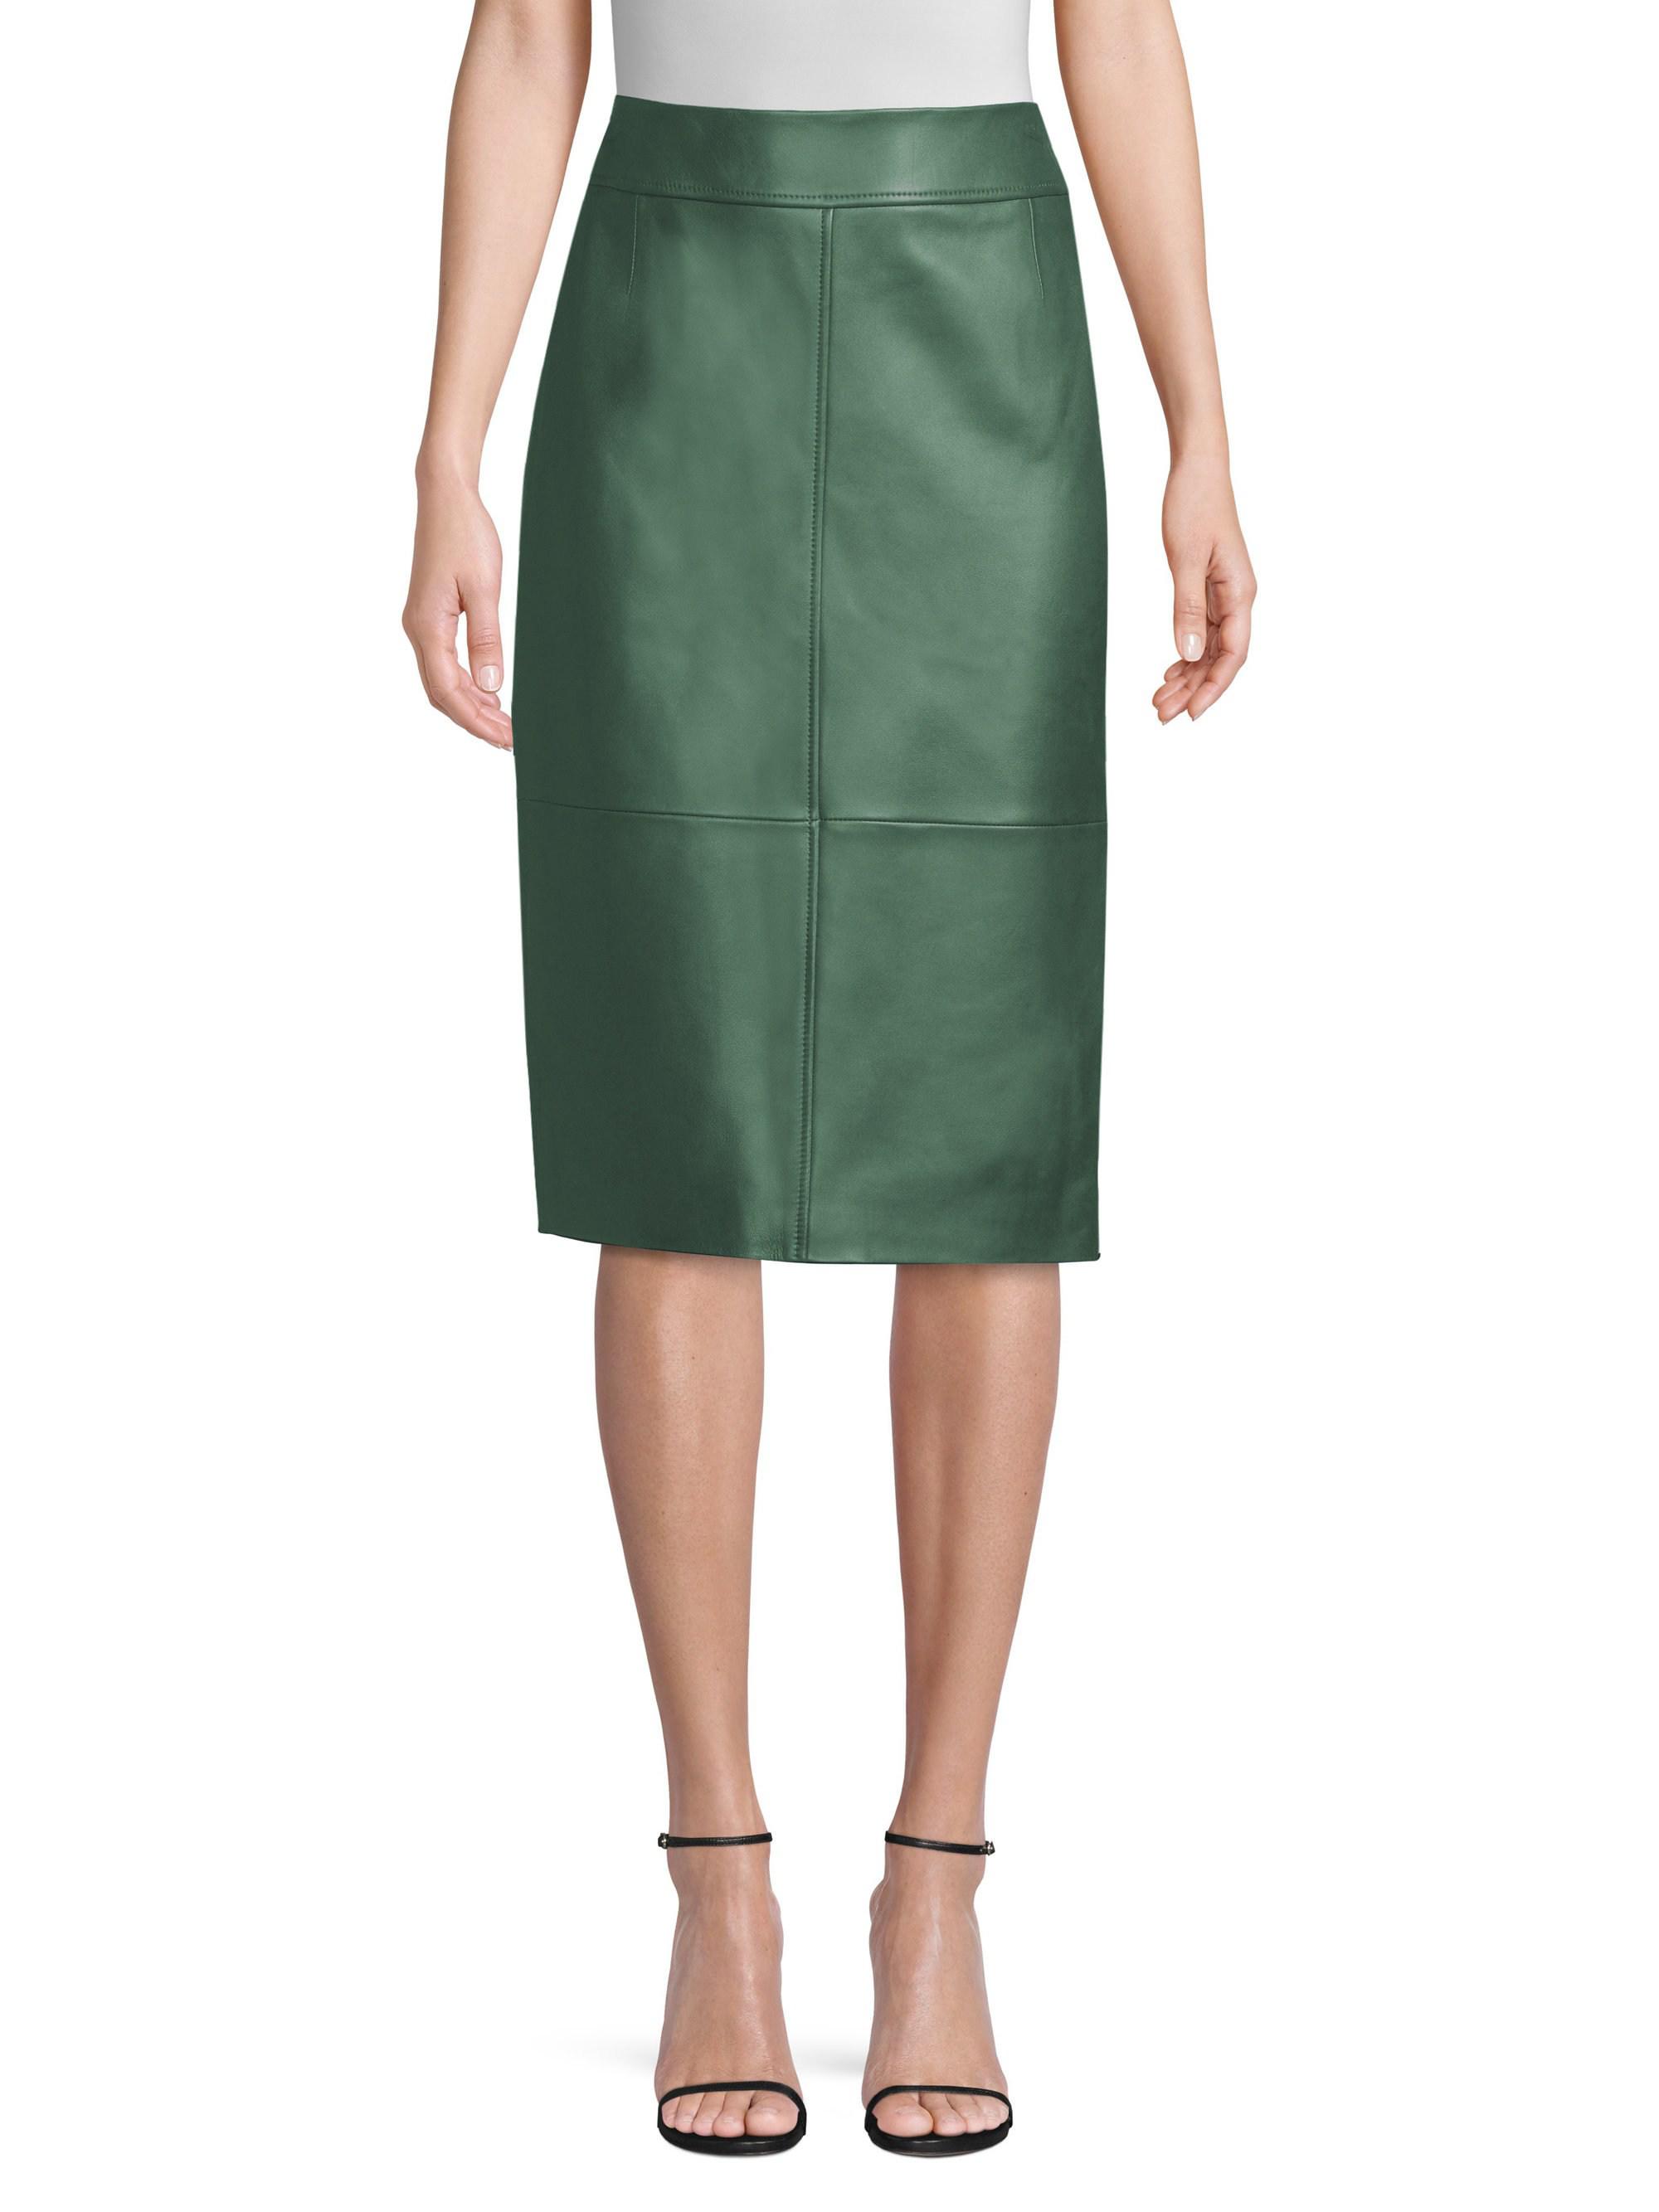 hugo boss leather skirt green